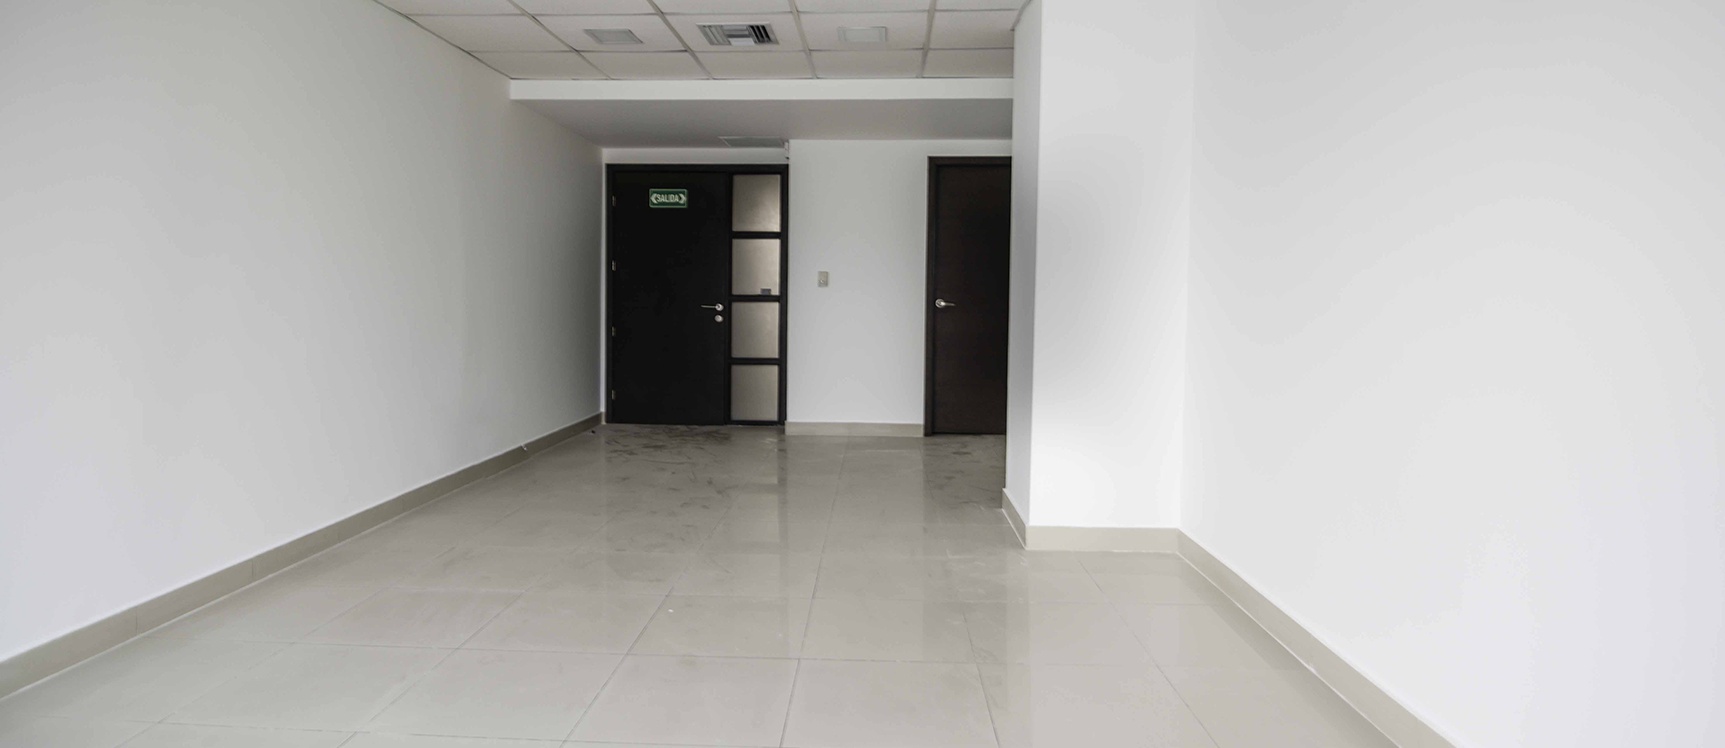 GeoBienes - Oficina en venta en City Office Norte de Guayaquil - Plusvalia Guayaquil Casas de venta y alquiler Inmobiliaria Ecuador